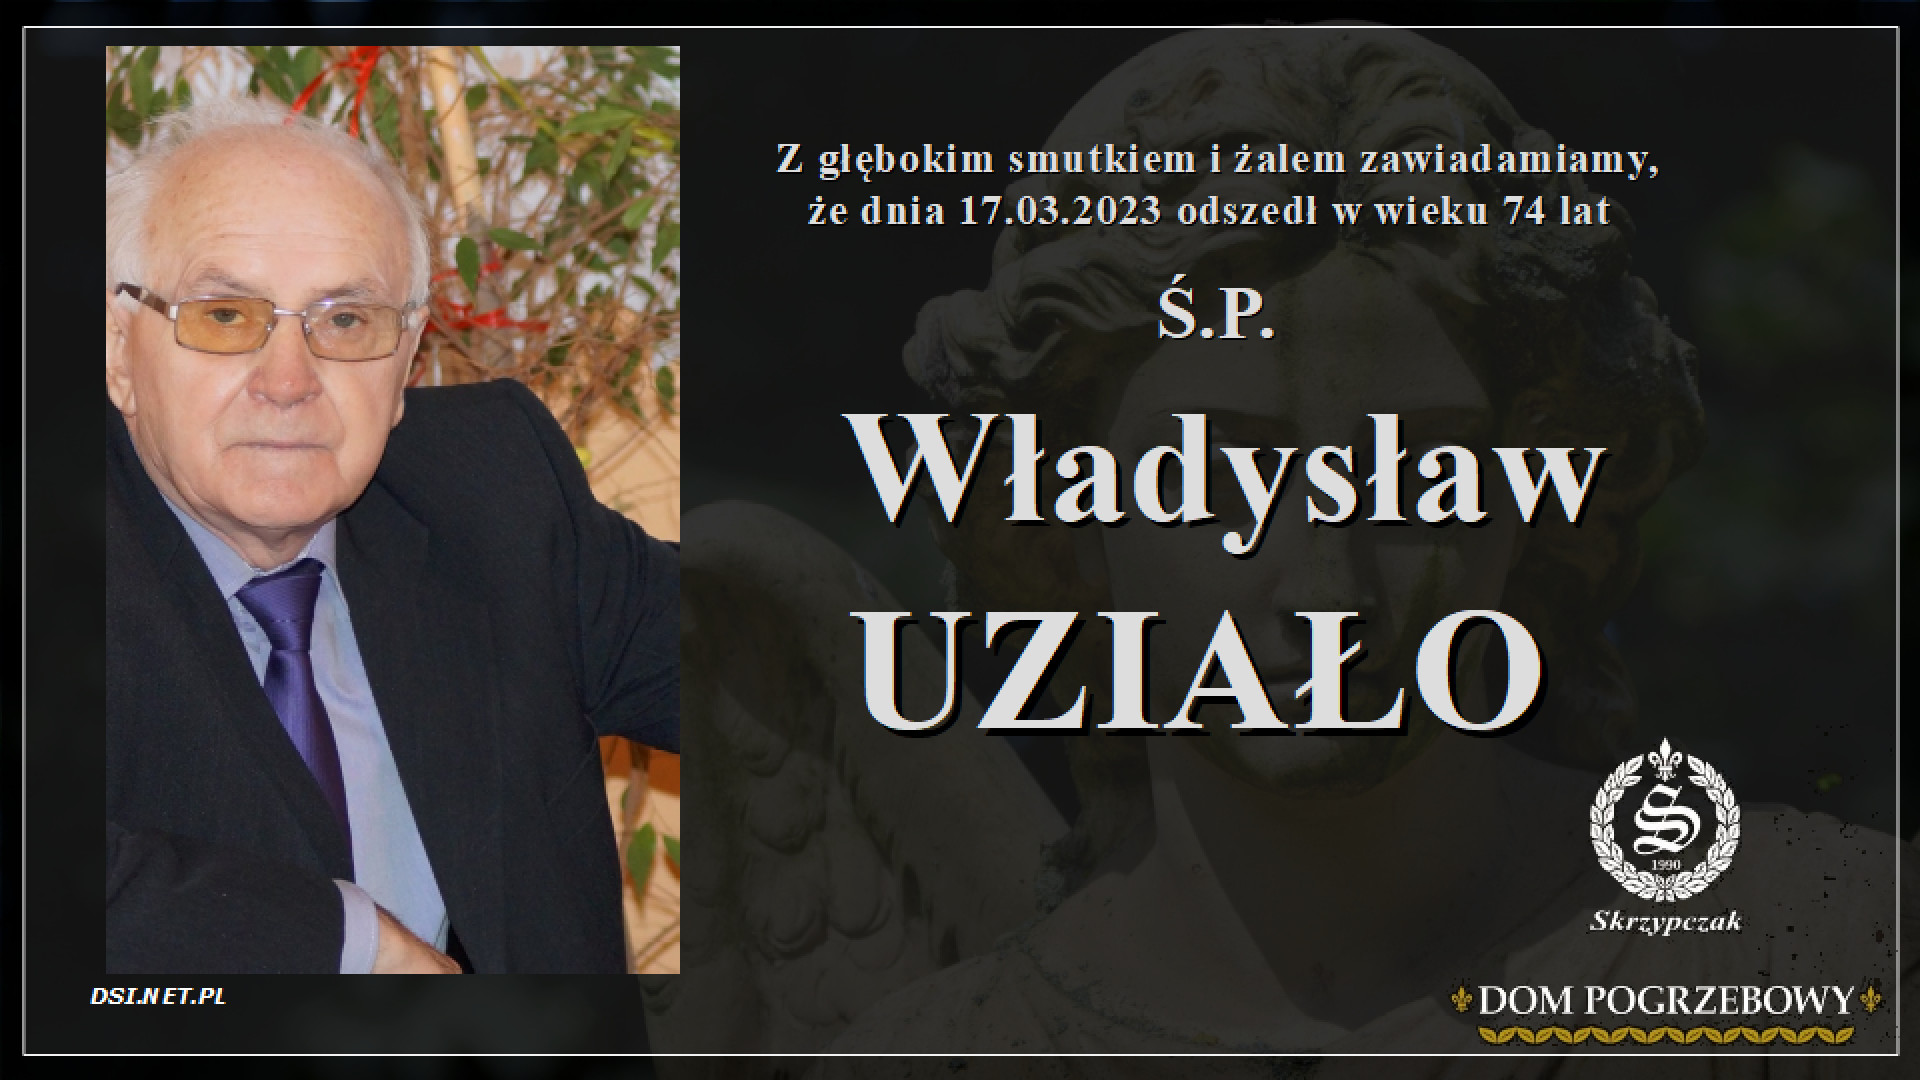 Ś.P. Władysław Uziało